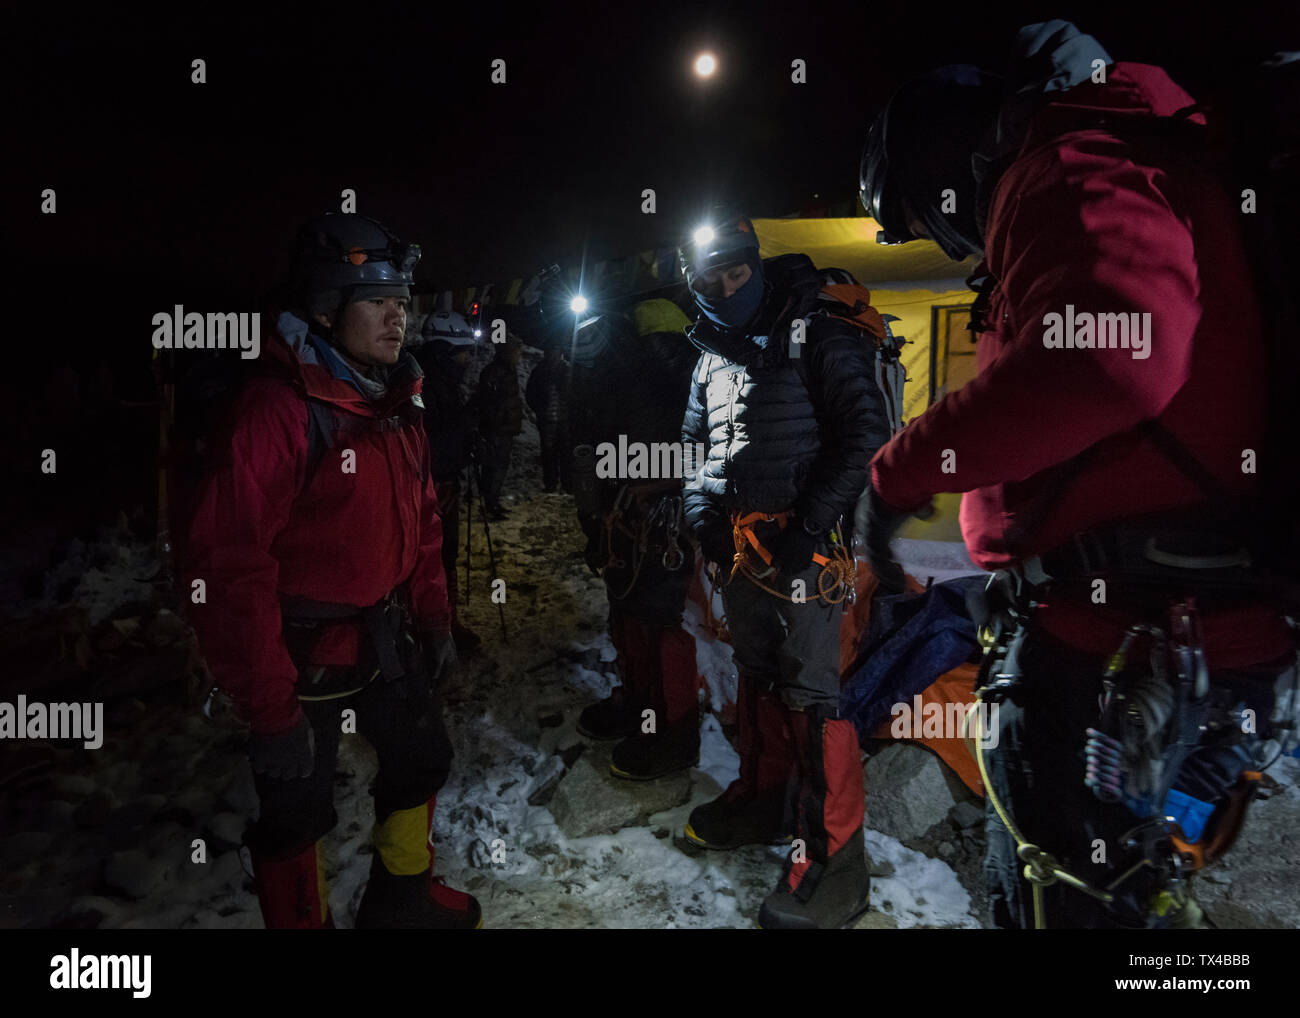 Nepal, Solo Khumbu, Mountaineers returning tp Everest Base Camp at night Stock Photo